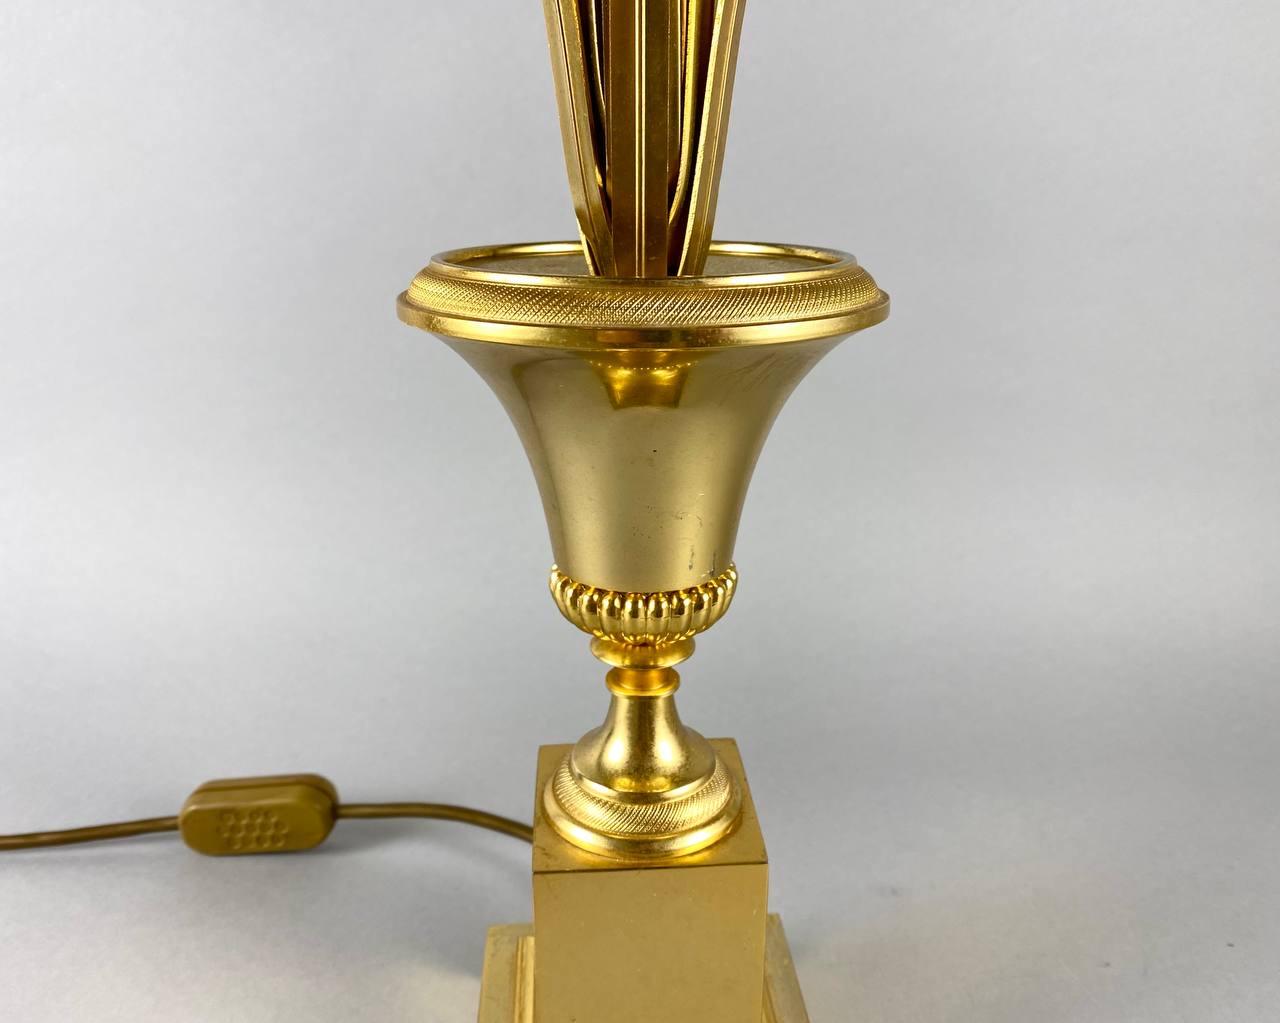 Designer Gilt Brass Table Lamp by Maison Charles for Boulanger, 1980s, Belgium 2